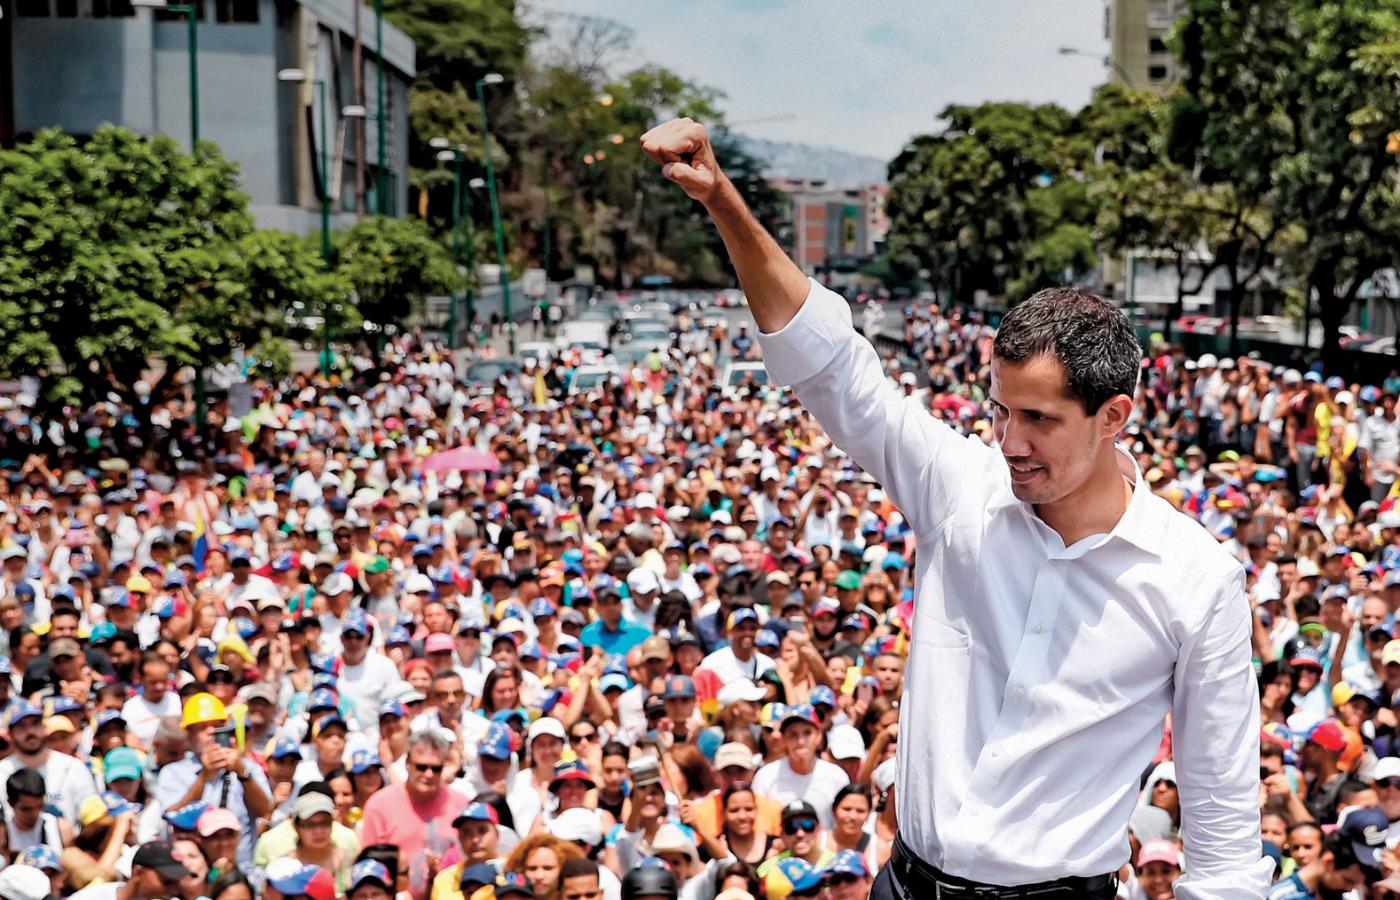 Interwencja USA w Wenezueli mogłaby wywołać wojnę domową. Na dodatek ustanowiłaby rząd z zewnętrznego nadania. Na zdjęciu Juan Guaido przemawia do mieszkańców Caracas.